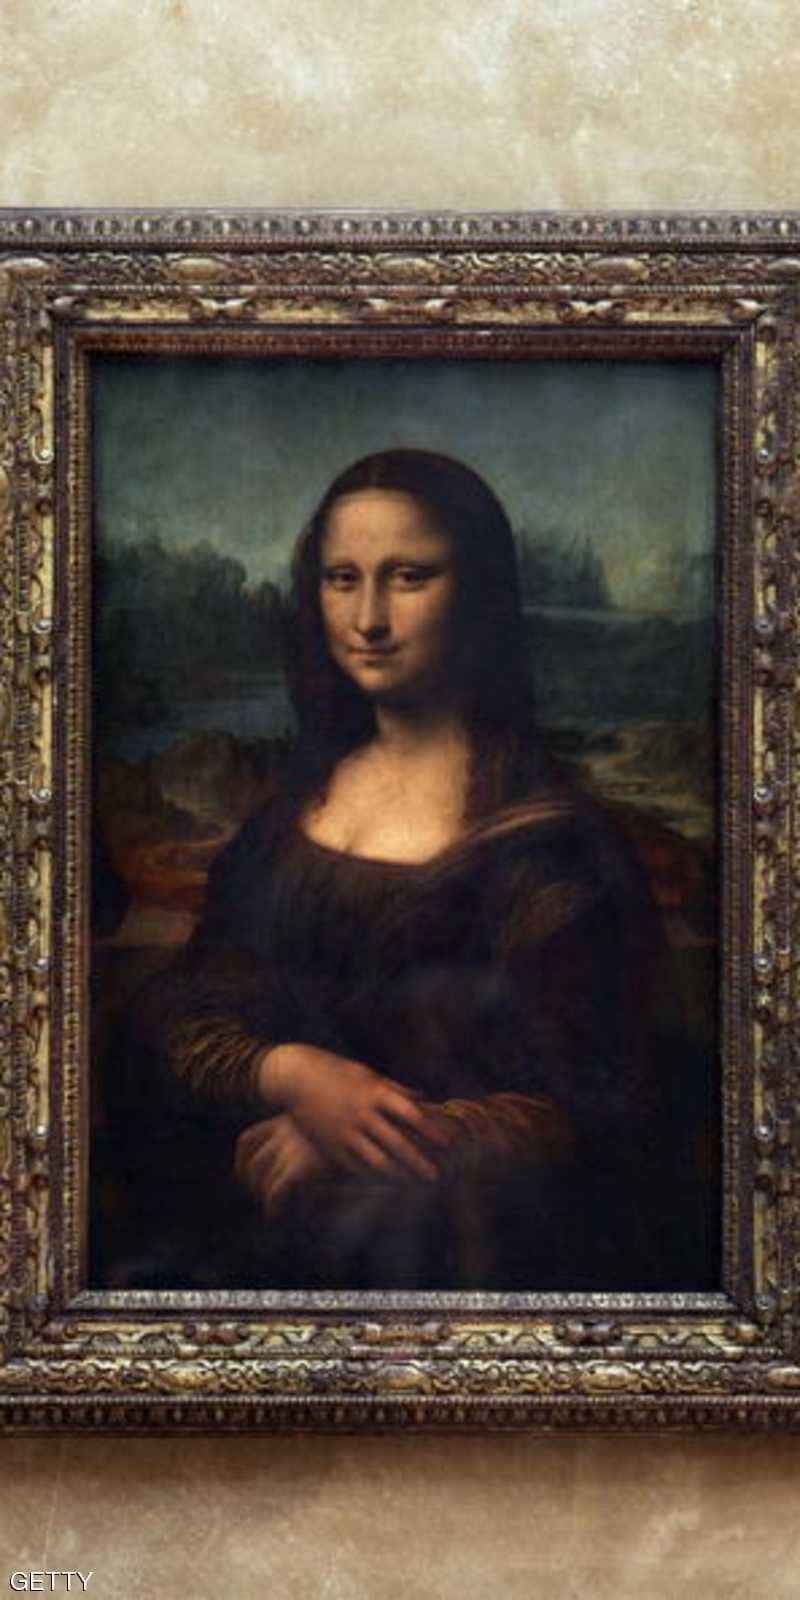 اين توجد لوحه الموناليزا , حقيقة لوحة الموناليزا التى رسمها ليوناردو دا فنشي